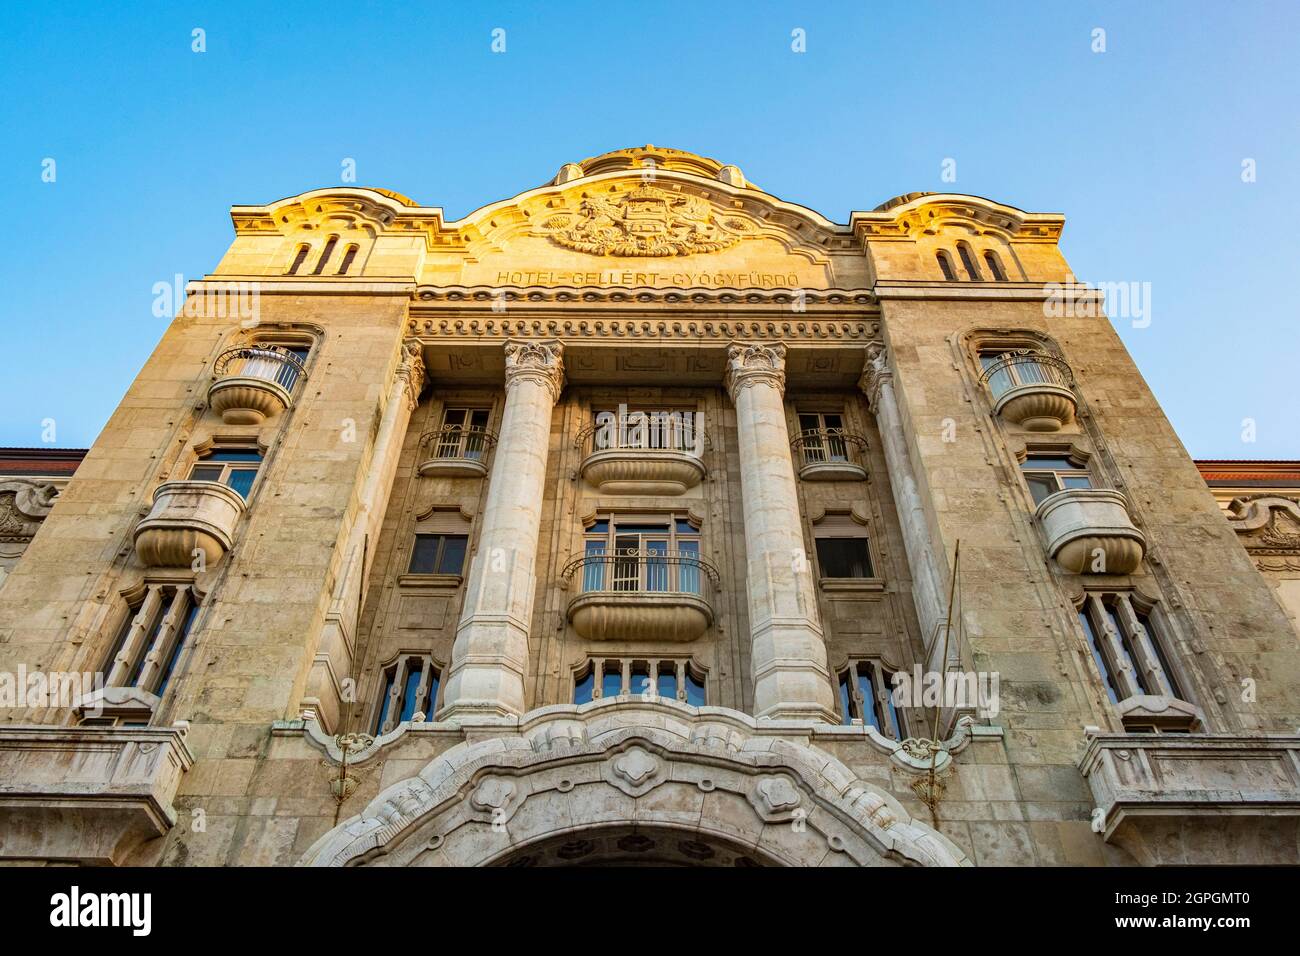 Ungheria, Budapest, dichiarata Patrimonio Mondiale dell'Umanità dall'UNESCO, quartiere di Buda, bagni e Hotel Spa Gellert con il suo arredamento in stile Art Nouveau Foto Stock